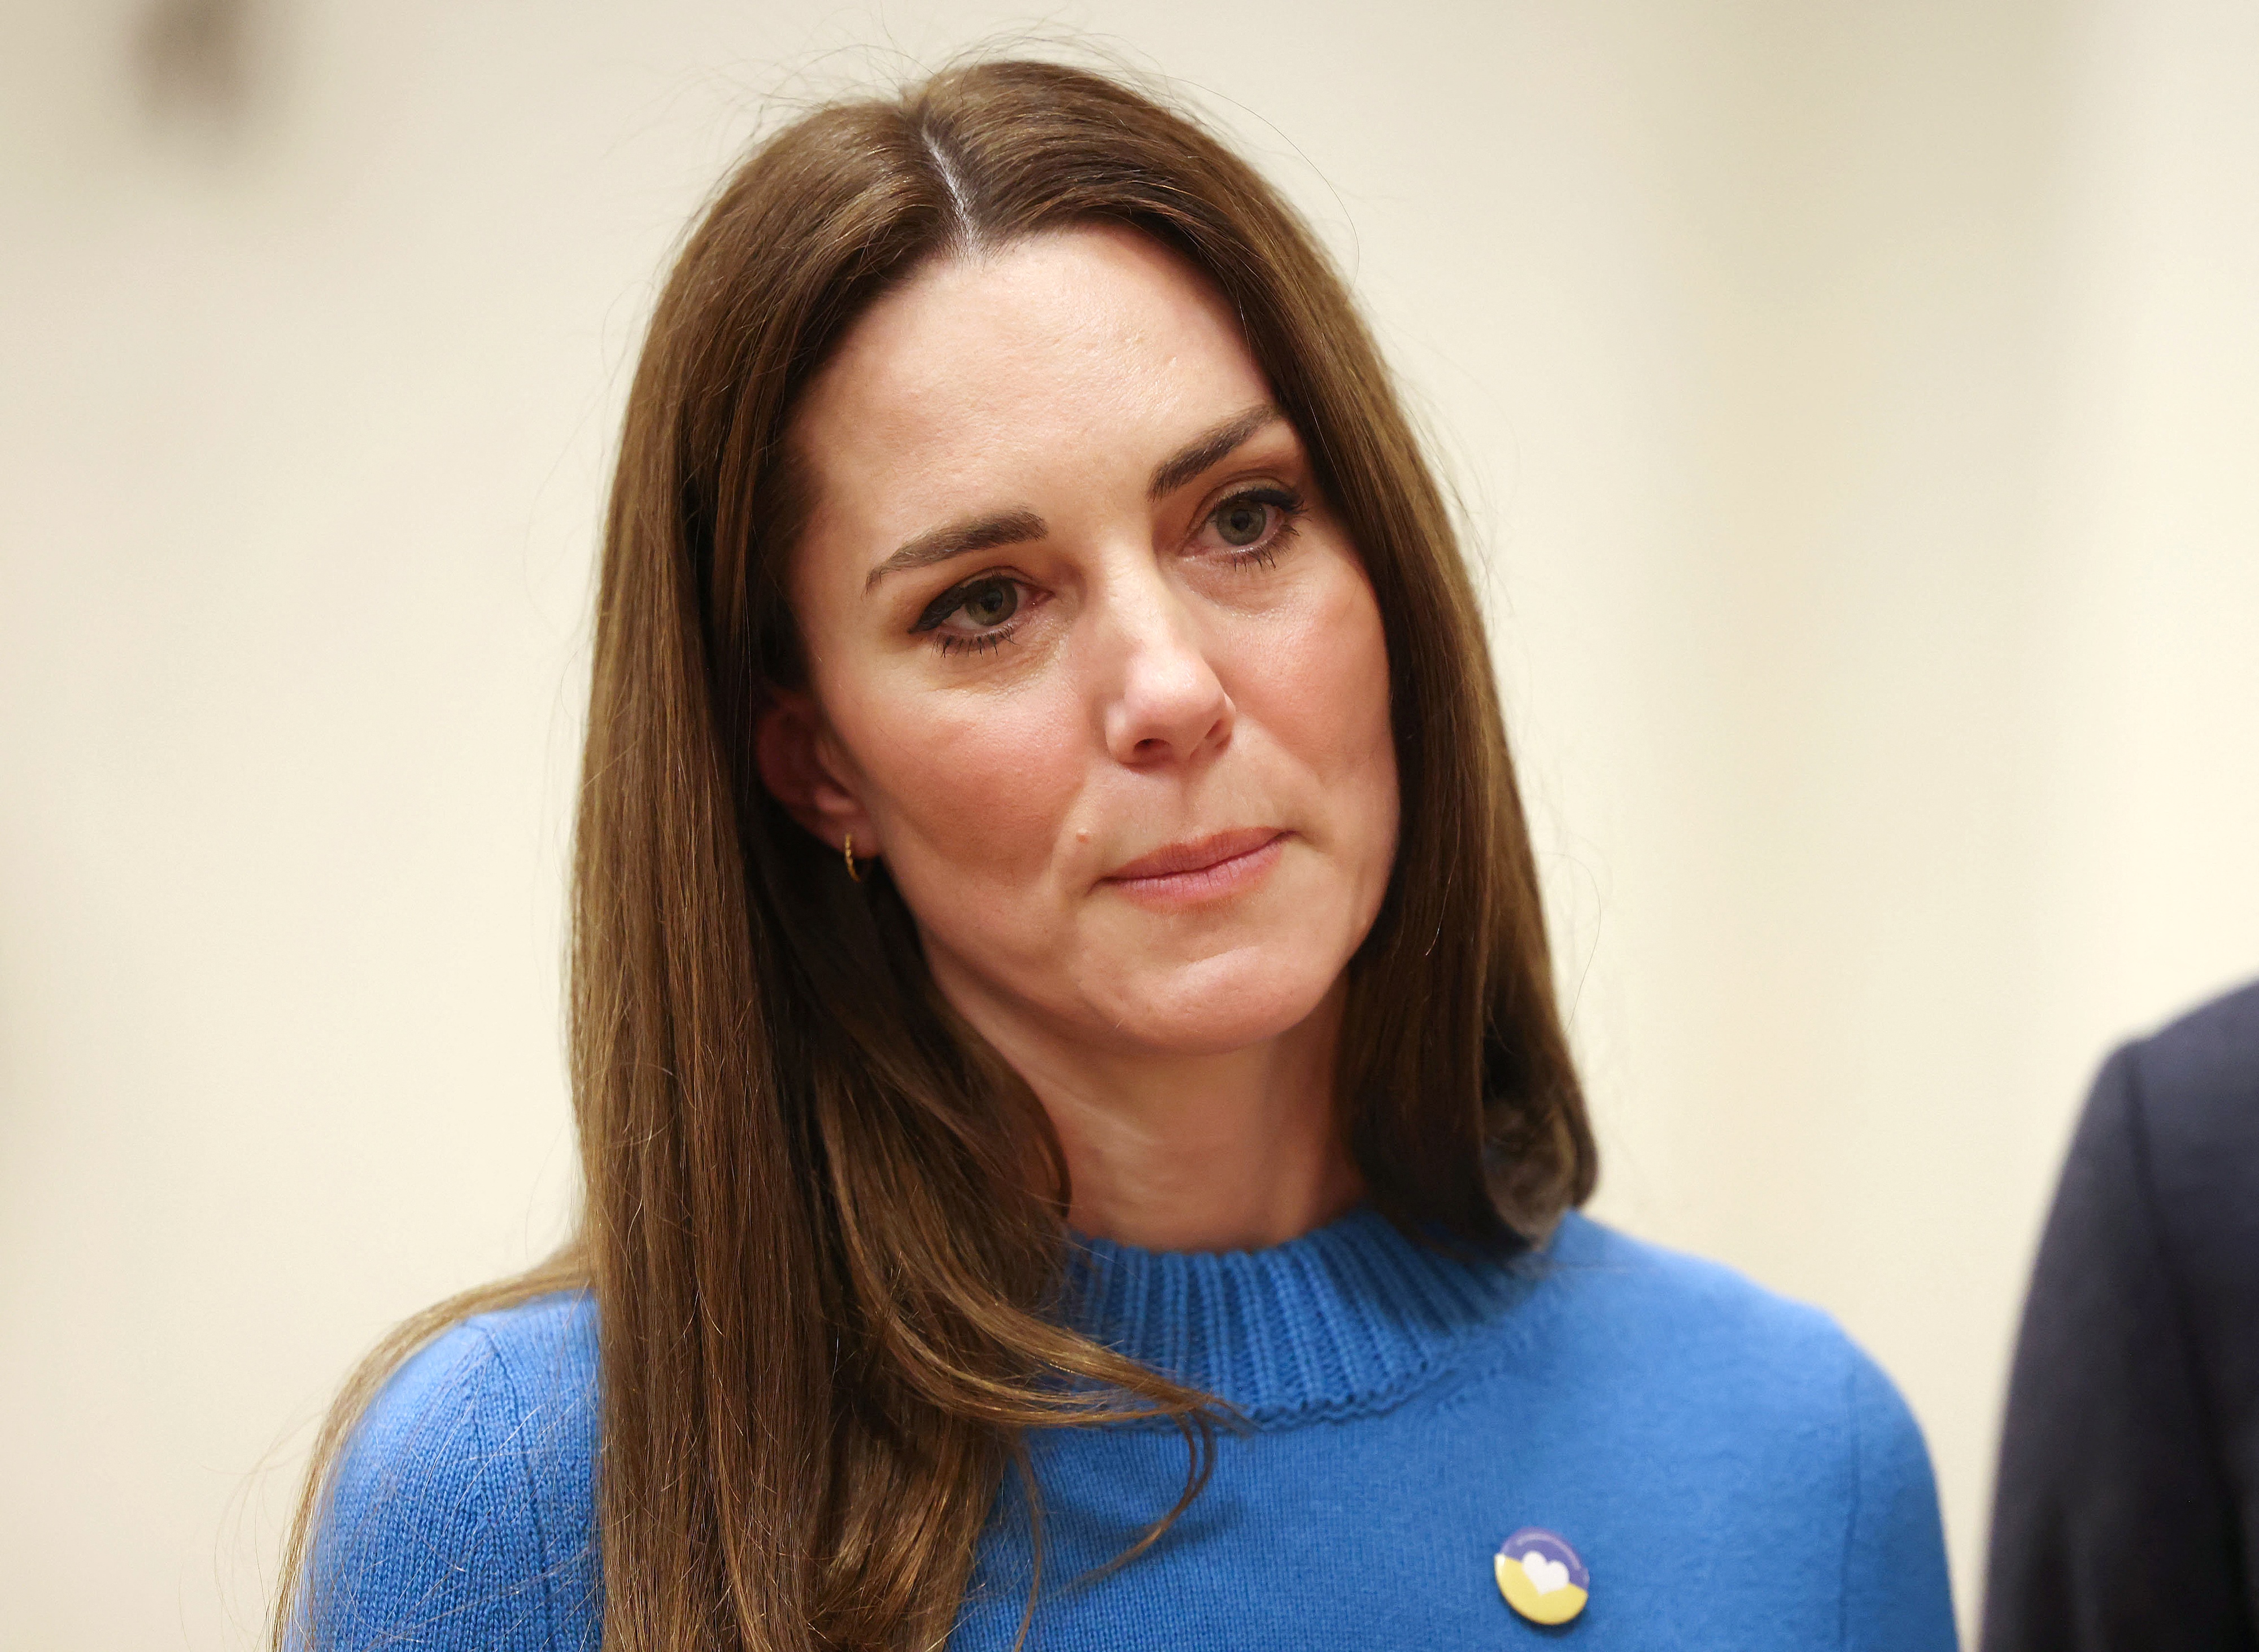 Kate Middleton lors d'une visite au centre culturel ukrainien le 9 mars 2022 à Londres, en Angleterre. | Source : Getty Images